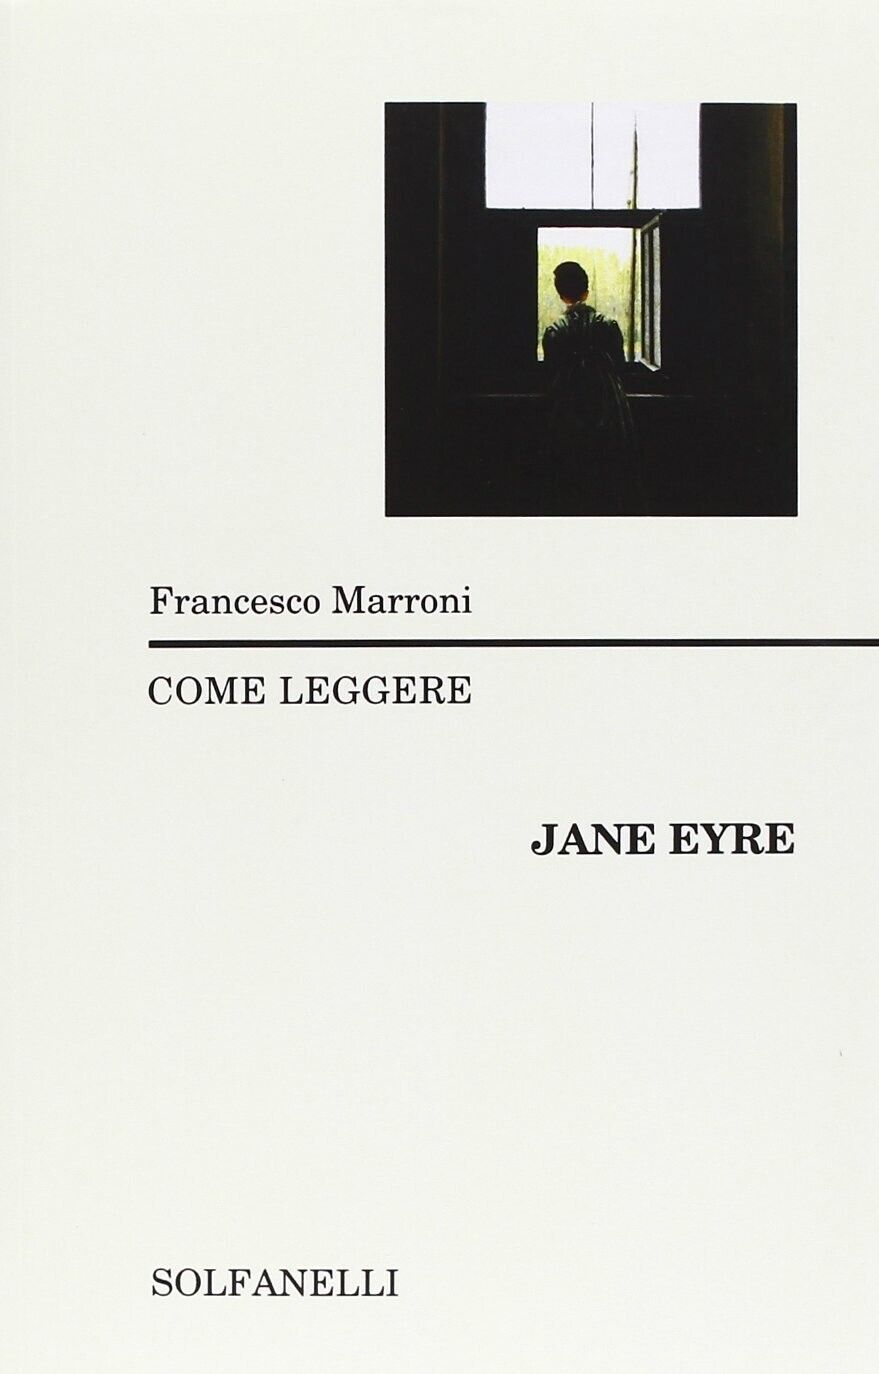   Come leggere Jane Eyre di Francesco Marroni, 2013, Solfanelli